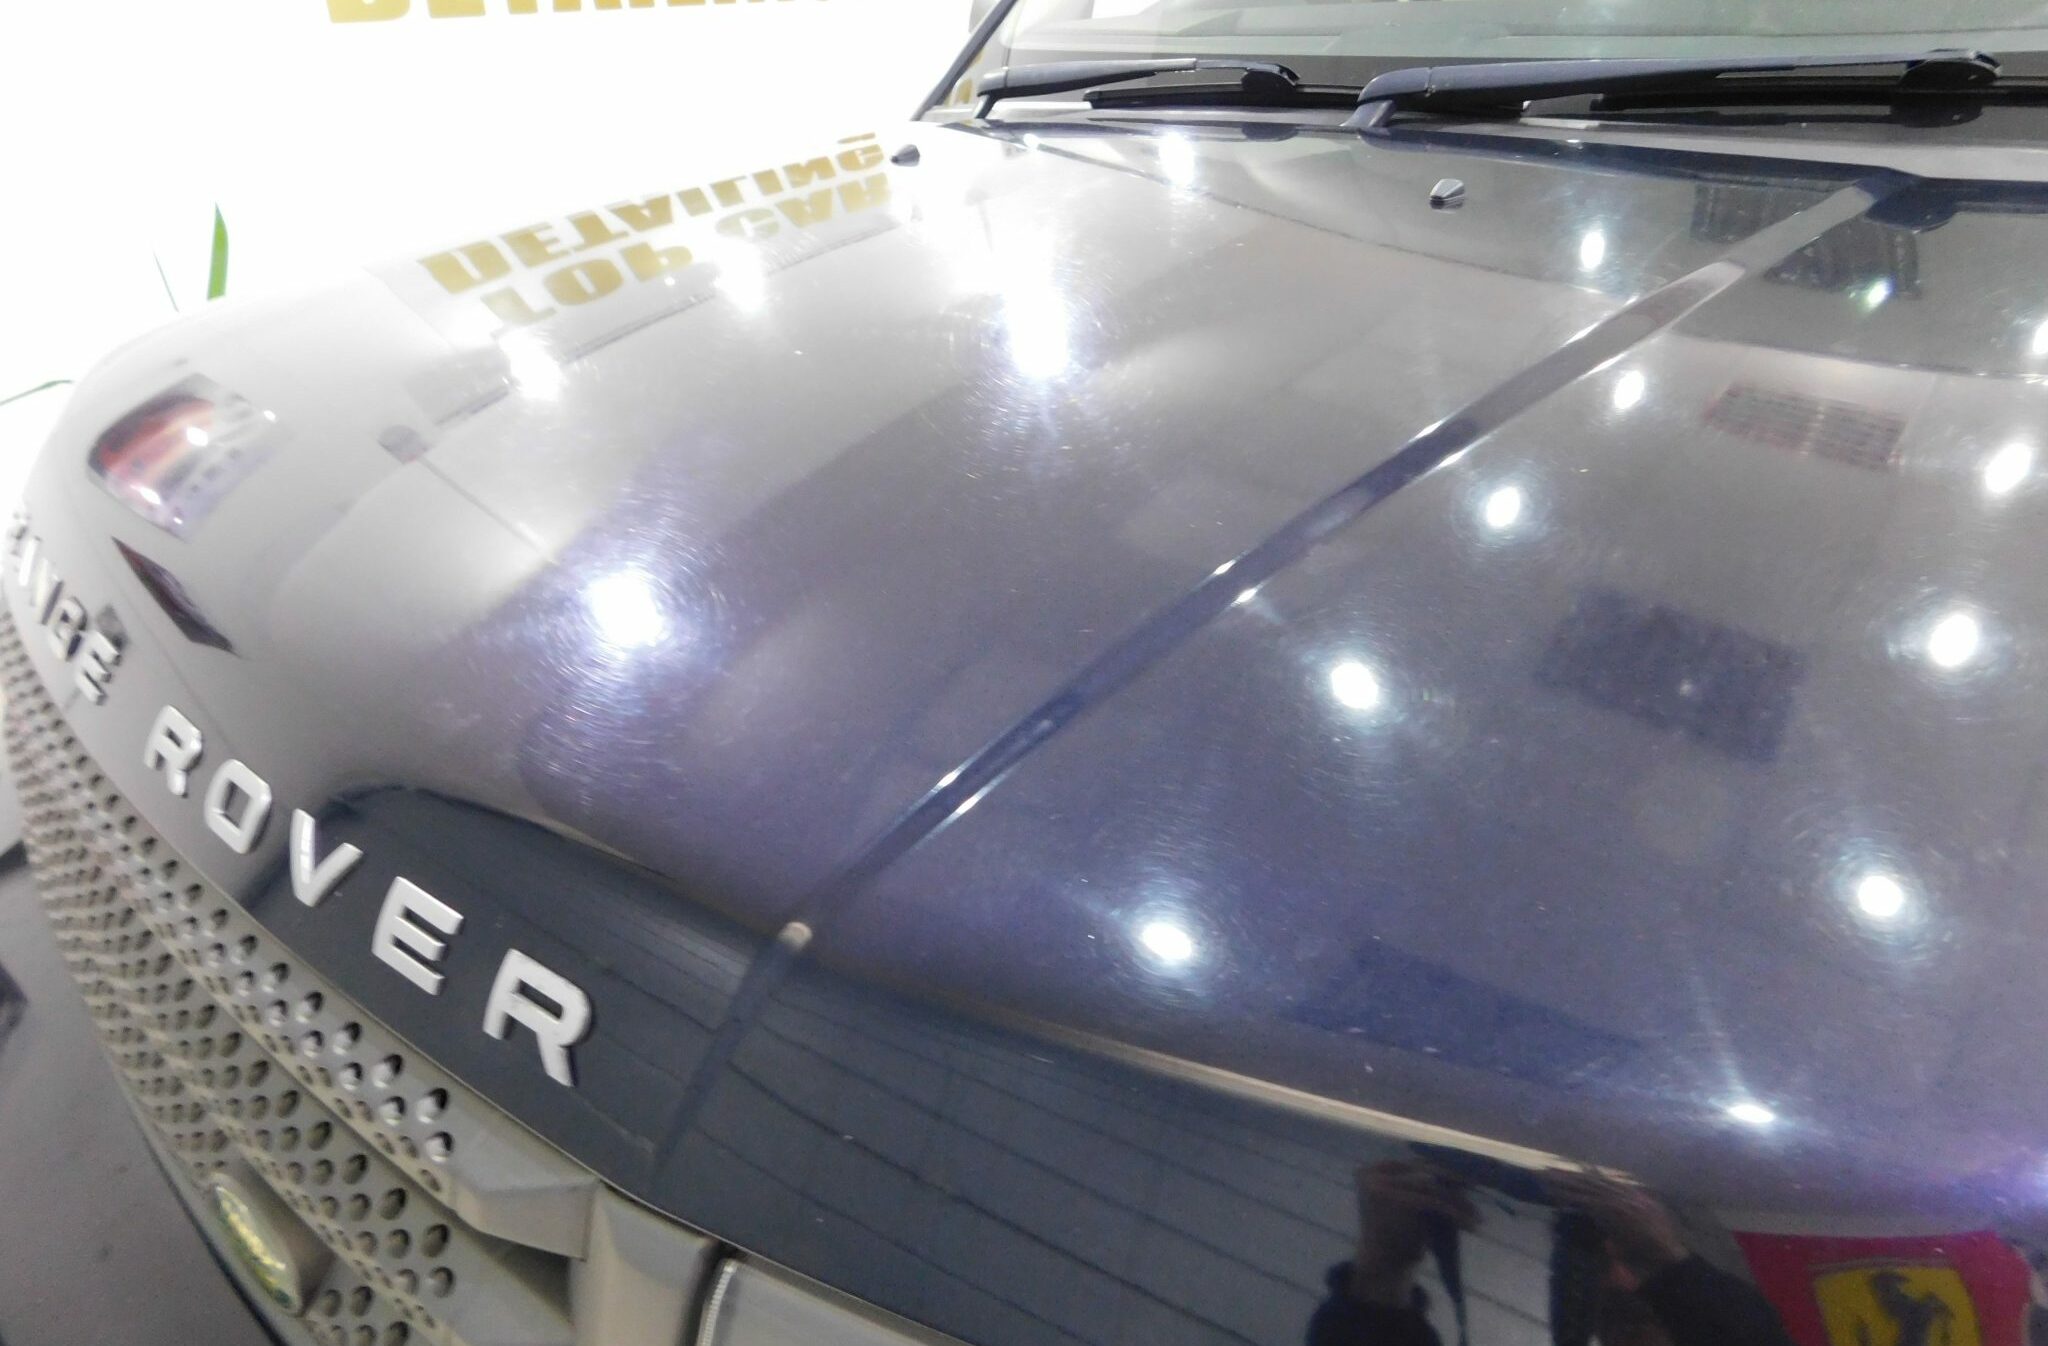 Range Rover Sport HSE bonnet before paint correction